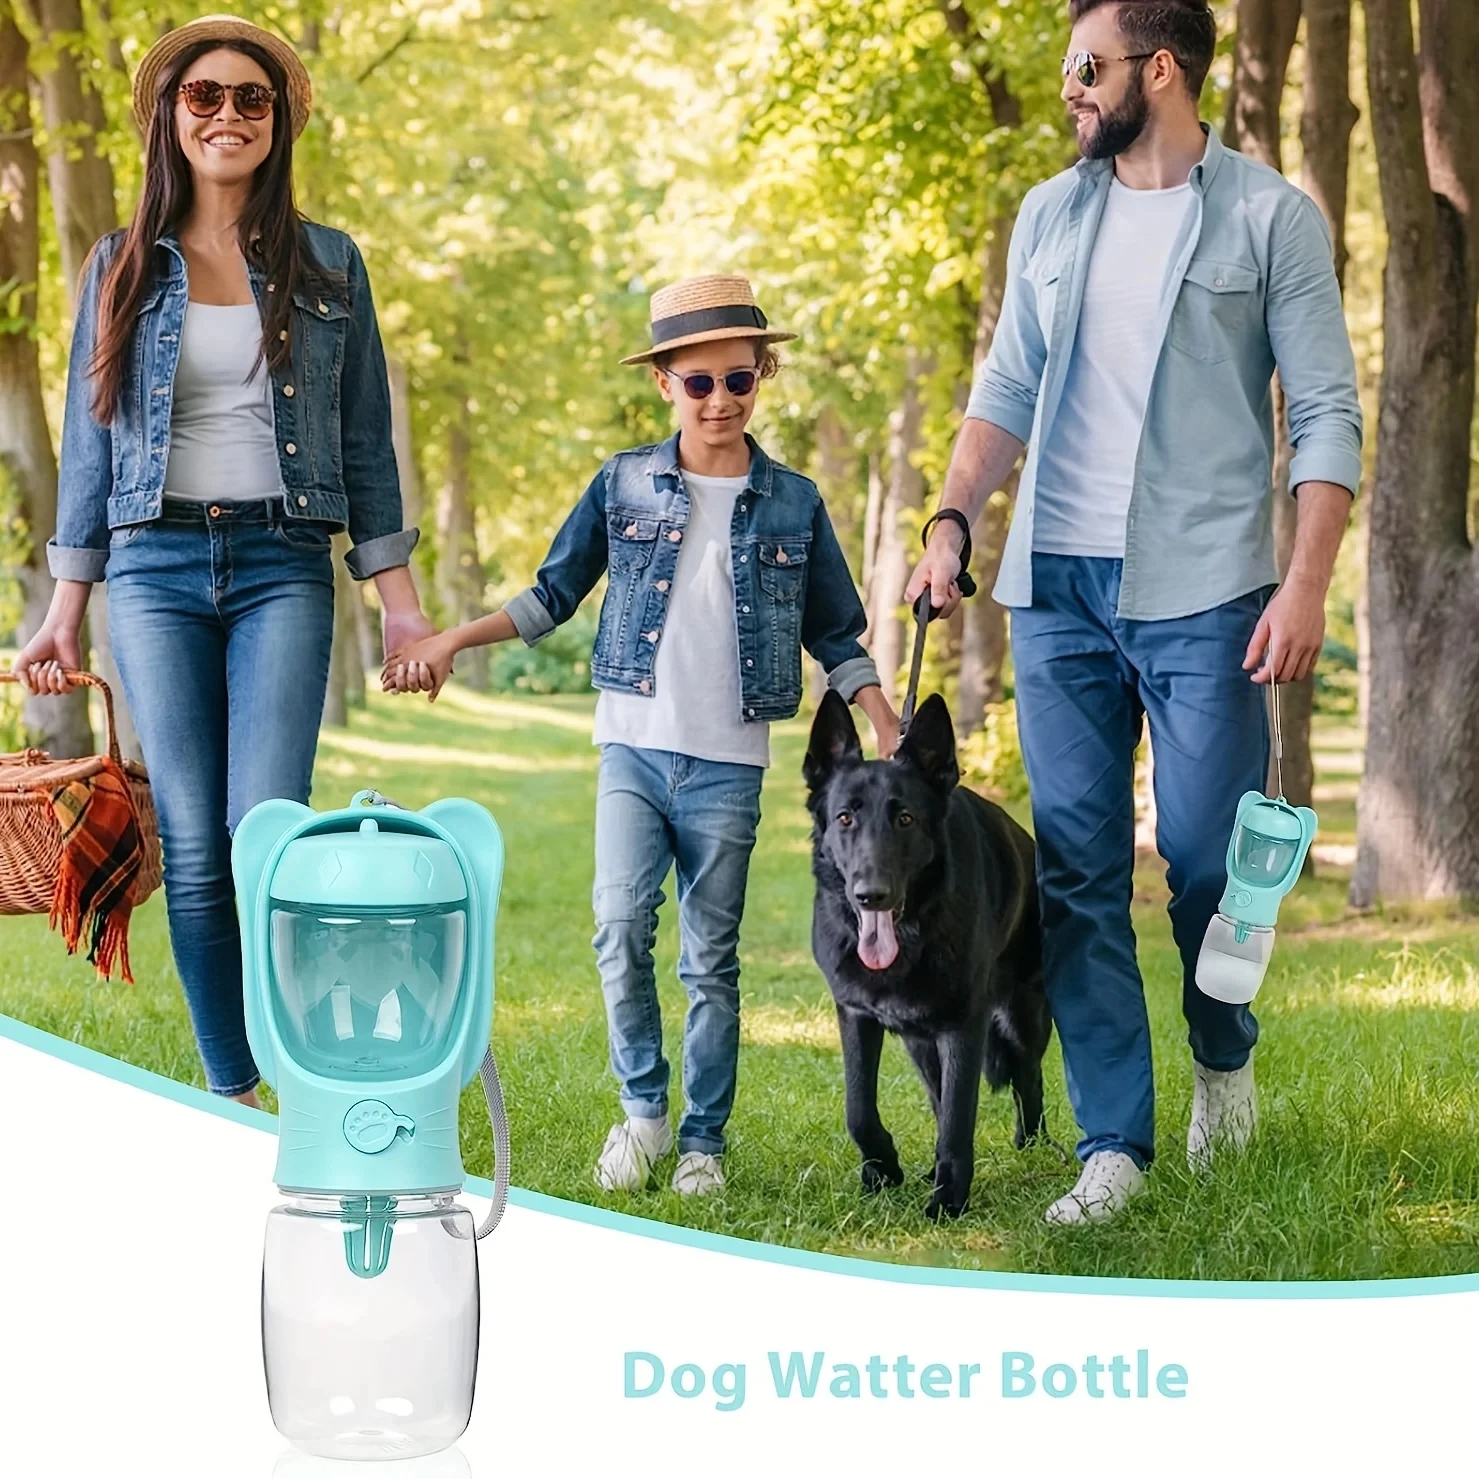 Pes voda láhev 2 v 1 přenosné voda rychlovarná konvice s odnímatelný pes jídlo nádobu protékání bezpečný outdoorové zvířátko kocour pes voda láhev